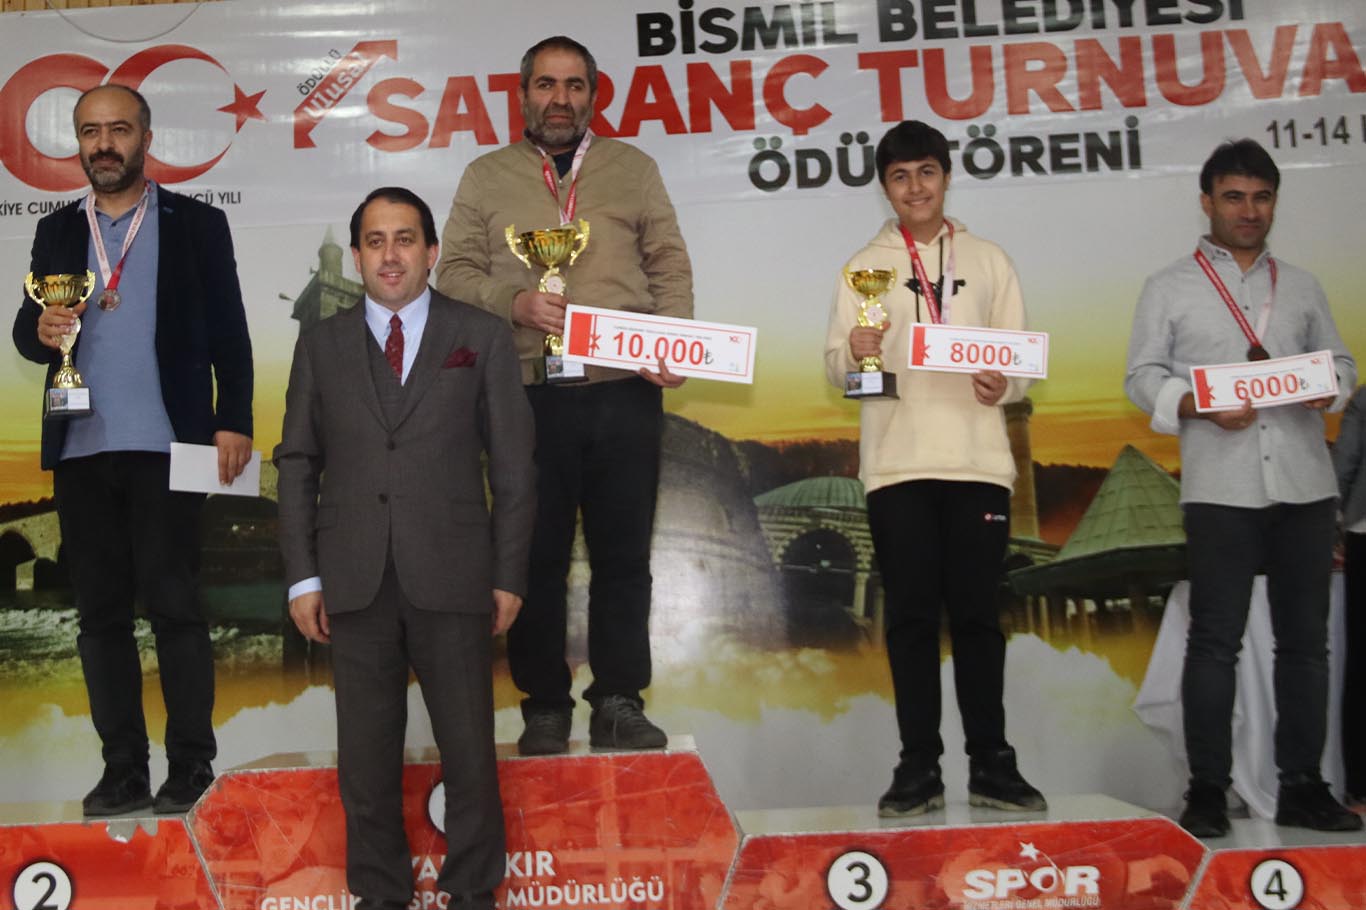 Bismil’de satranç şampiyonları ödüllerini aldı 19